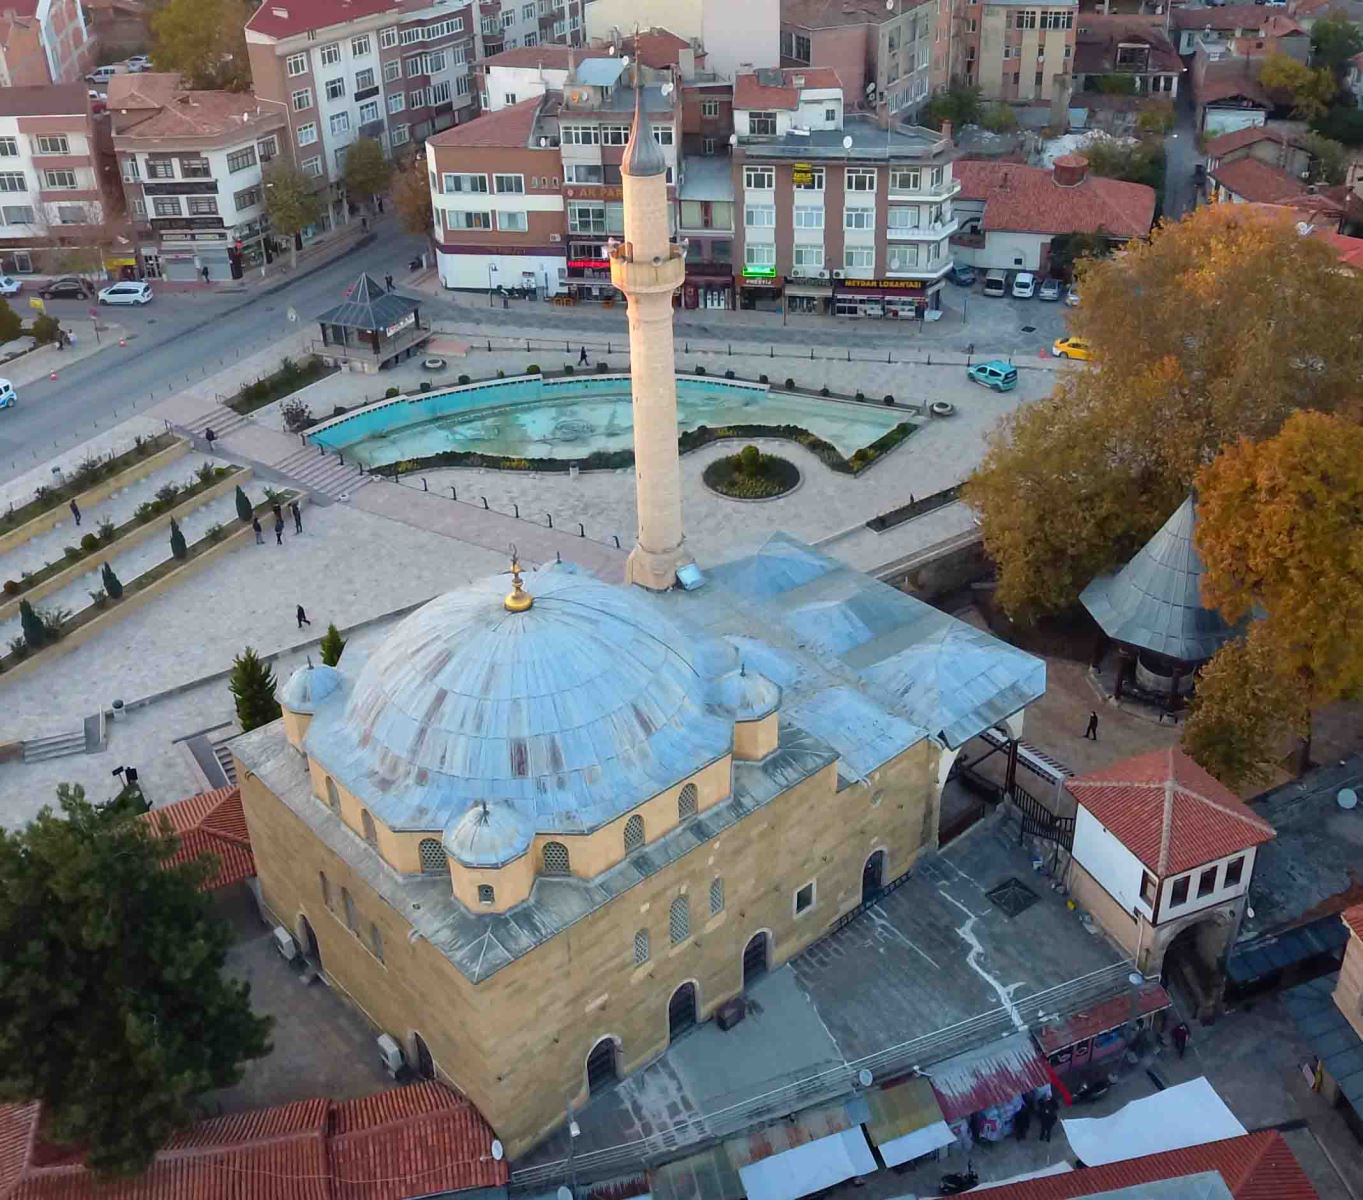 卡拉·穆斯塔法将军清真寺 – Kara Mustafa Paşa Cami